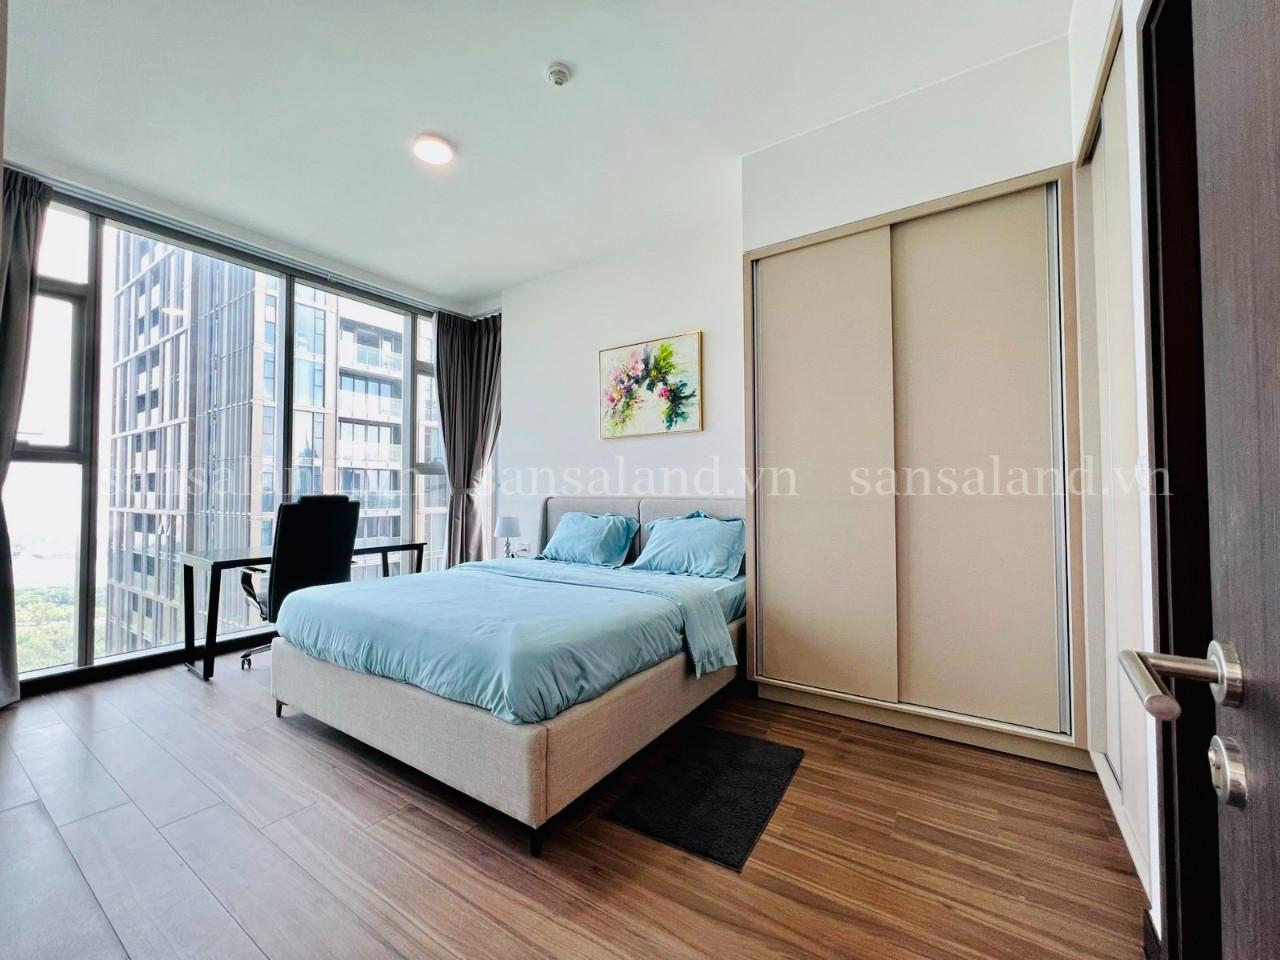 Căn hộ Empire City 148 m2, 3 Phòng ngủ, nội thất đẹp cho thuê $3000/ tháng